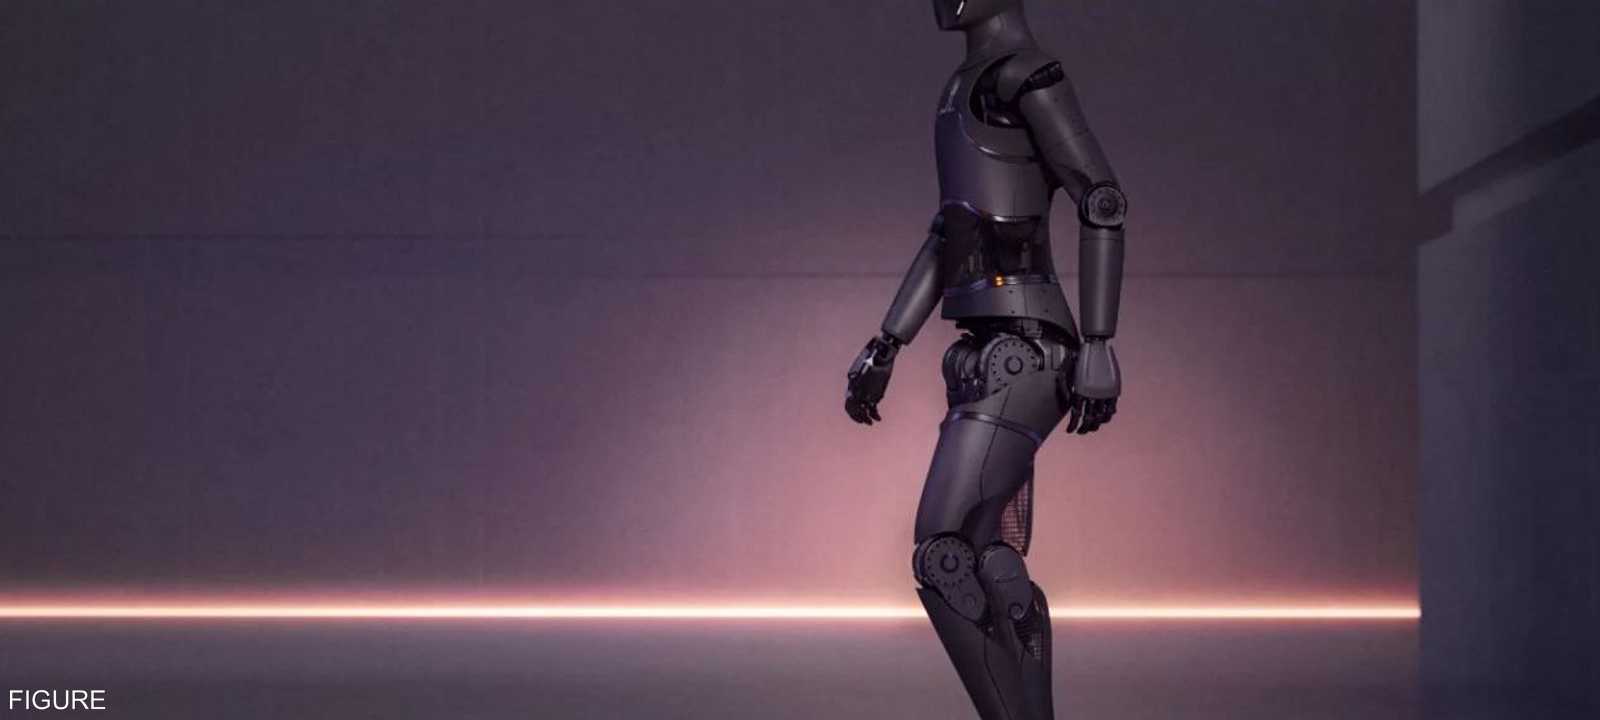 الروبوتات ستحل محل البشر في كثير من الوظائف.